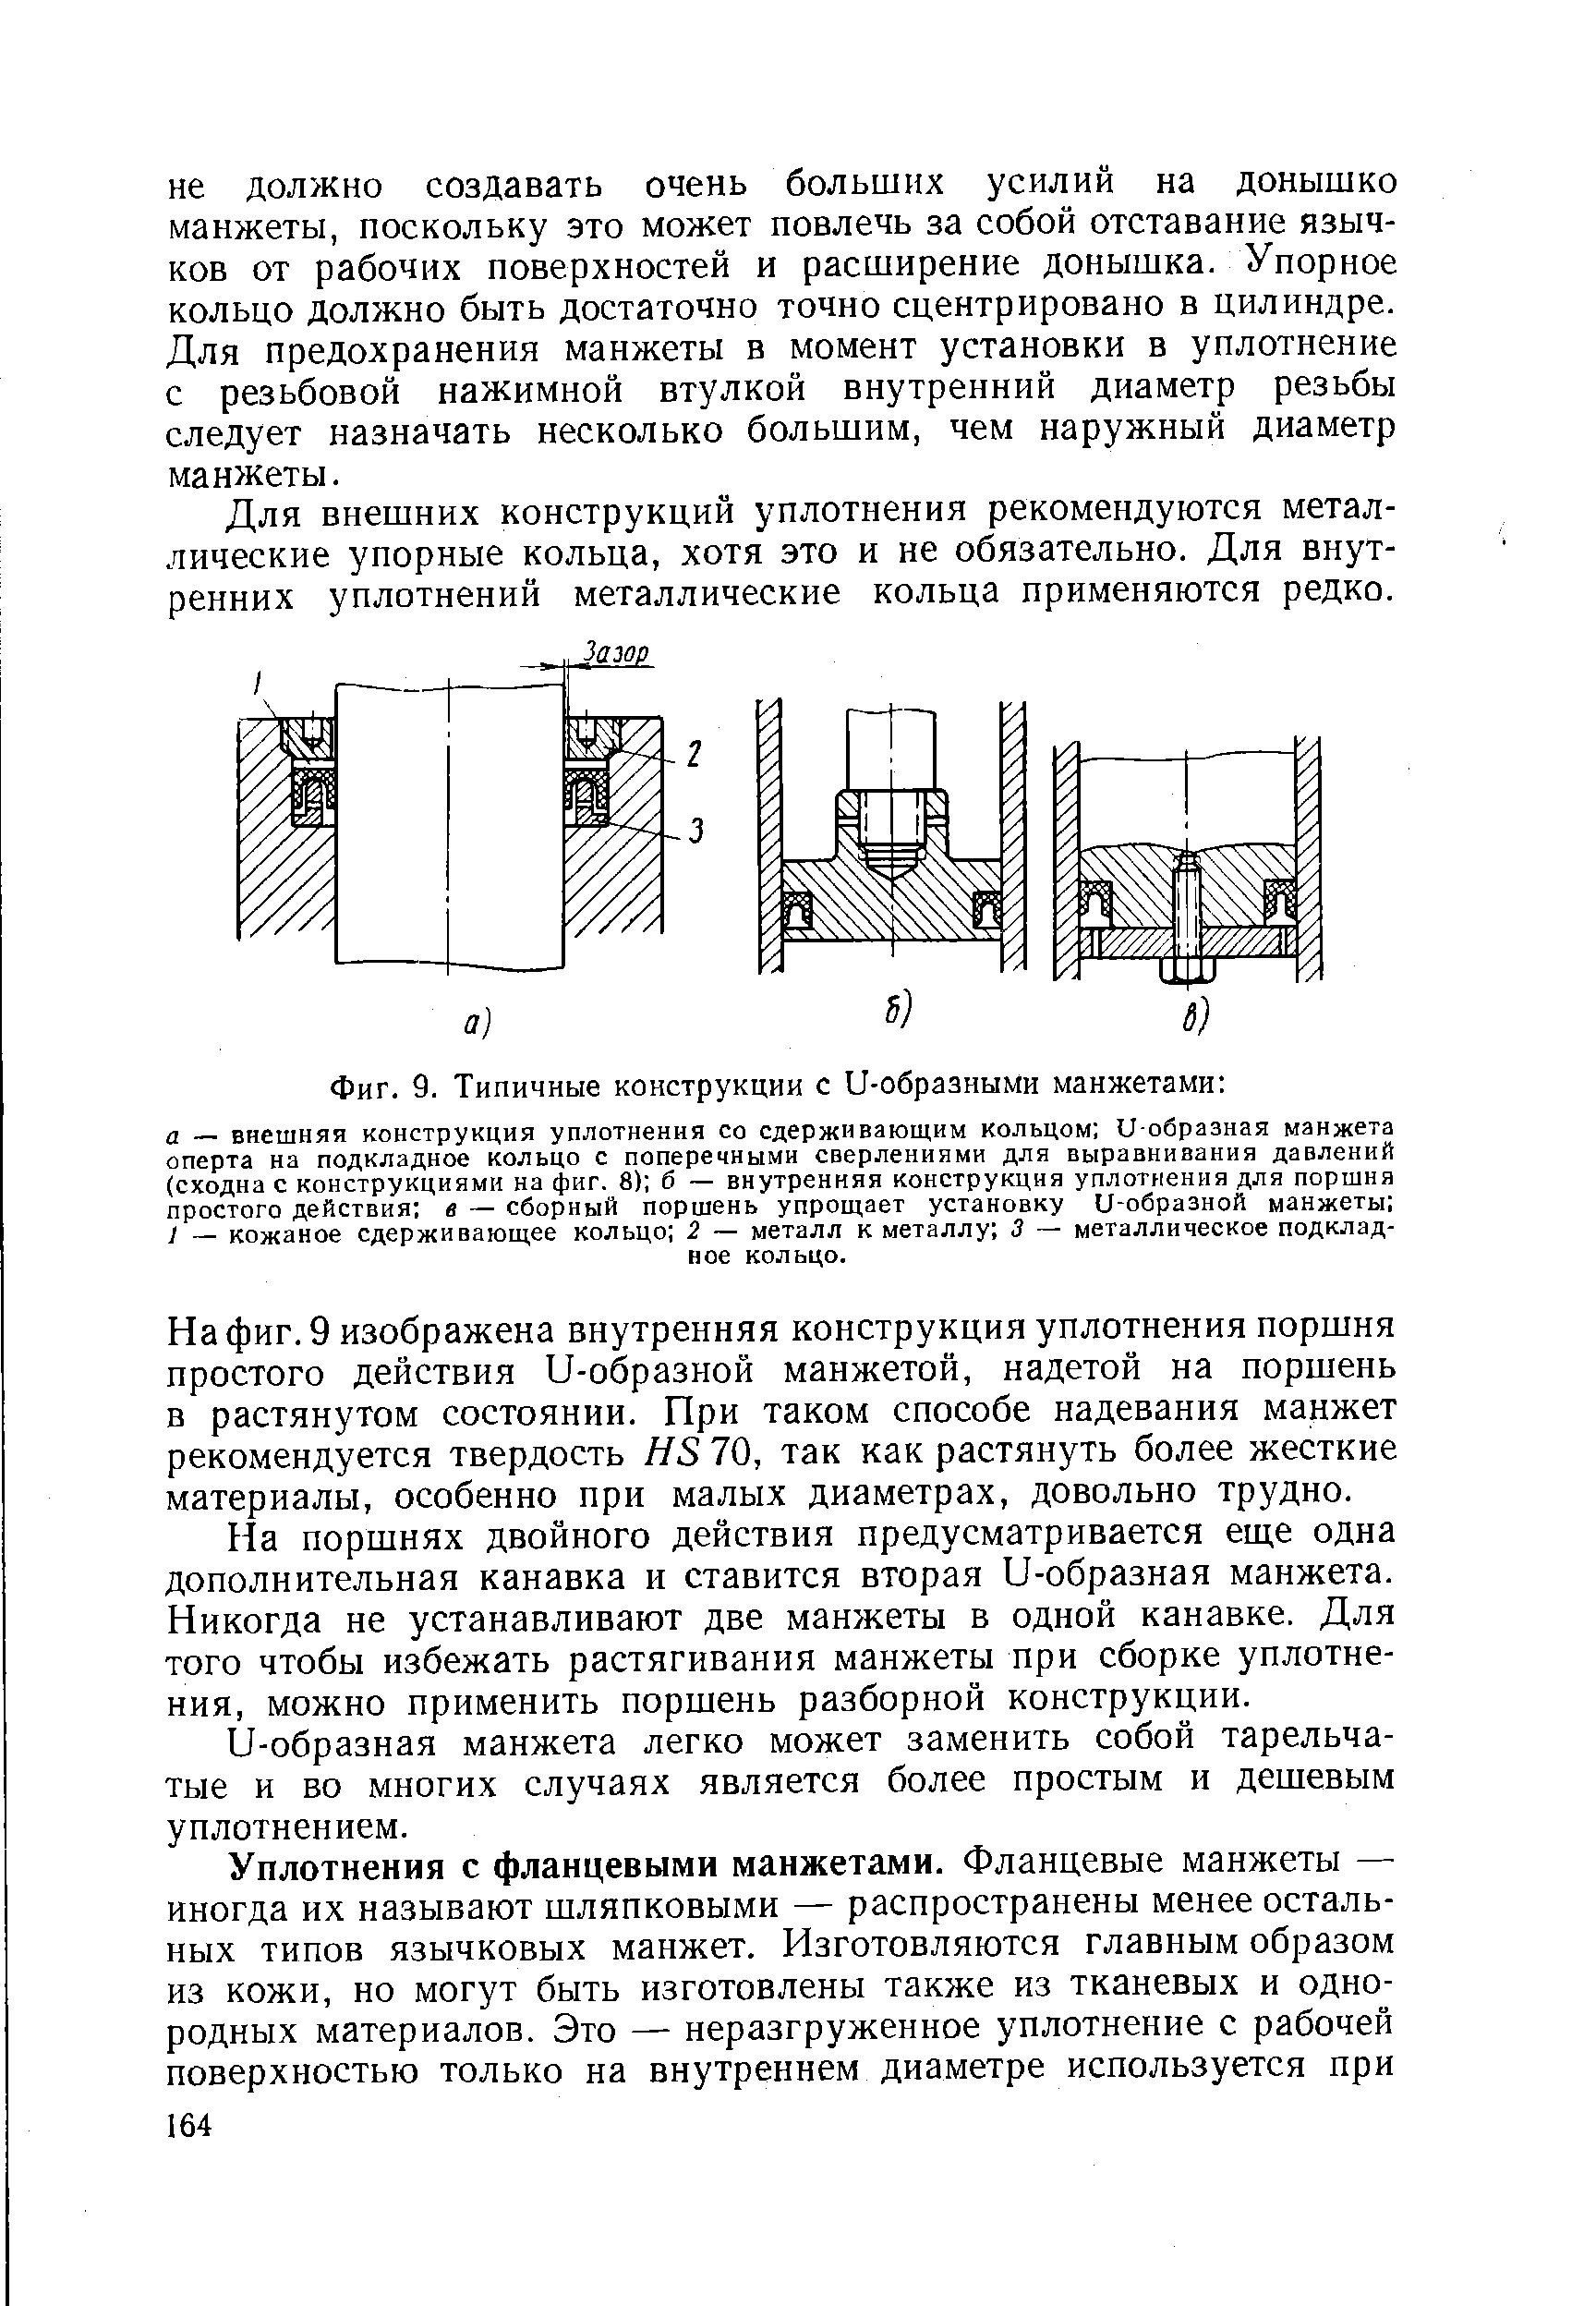 Фиг. 9. Типичные конструкции с U-образными манжетами 
